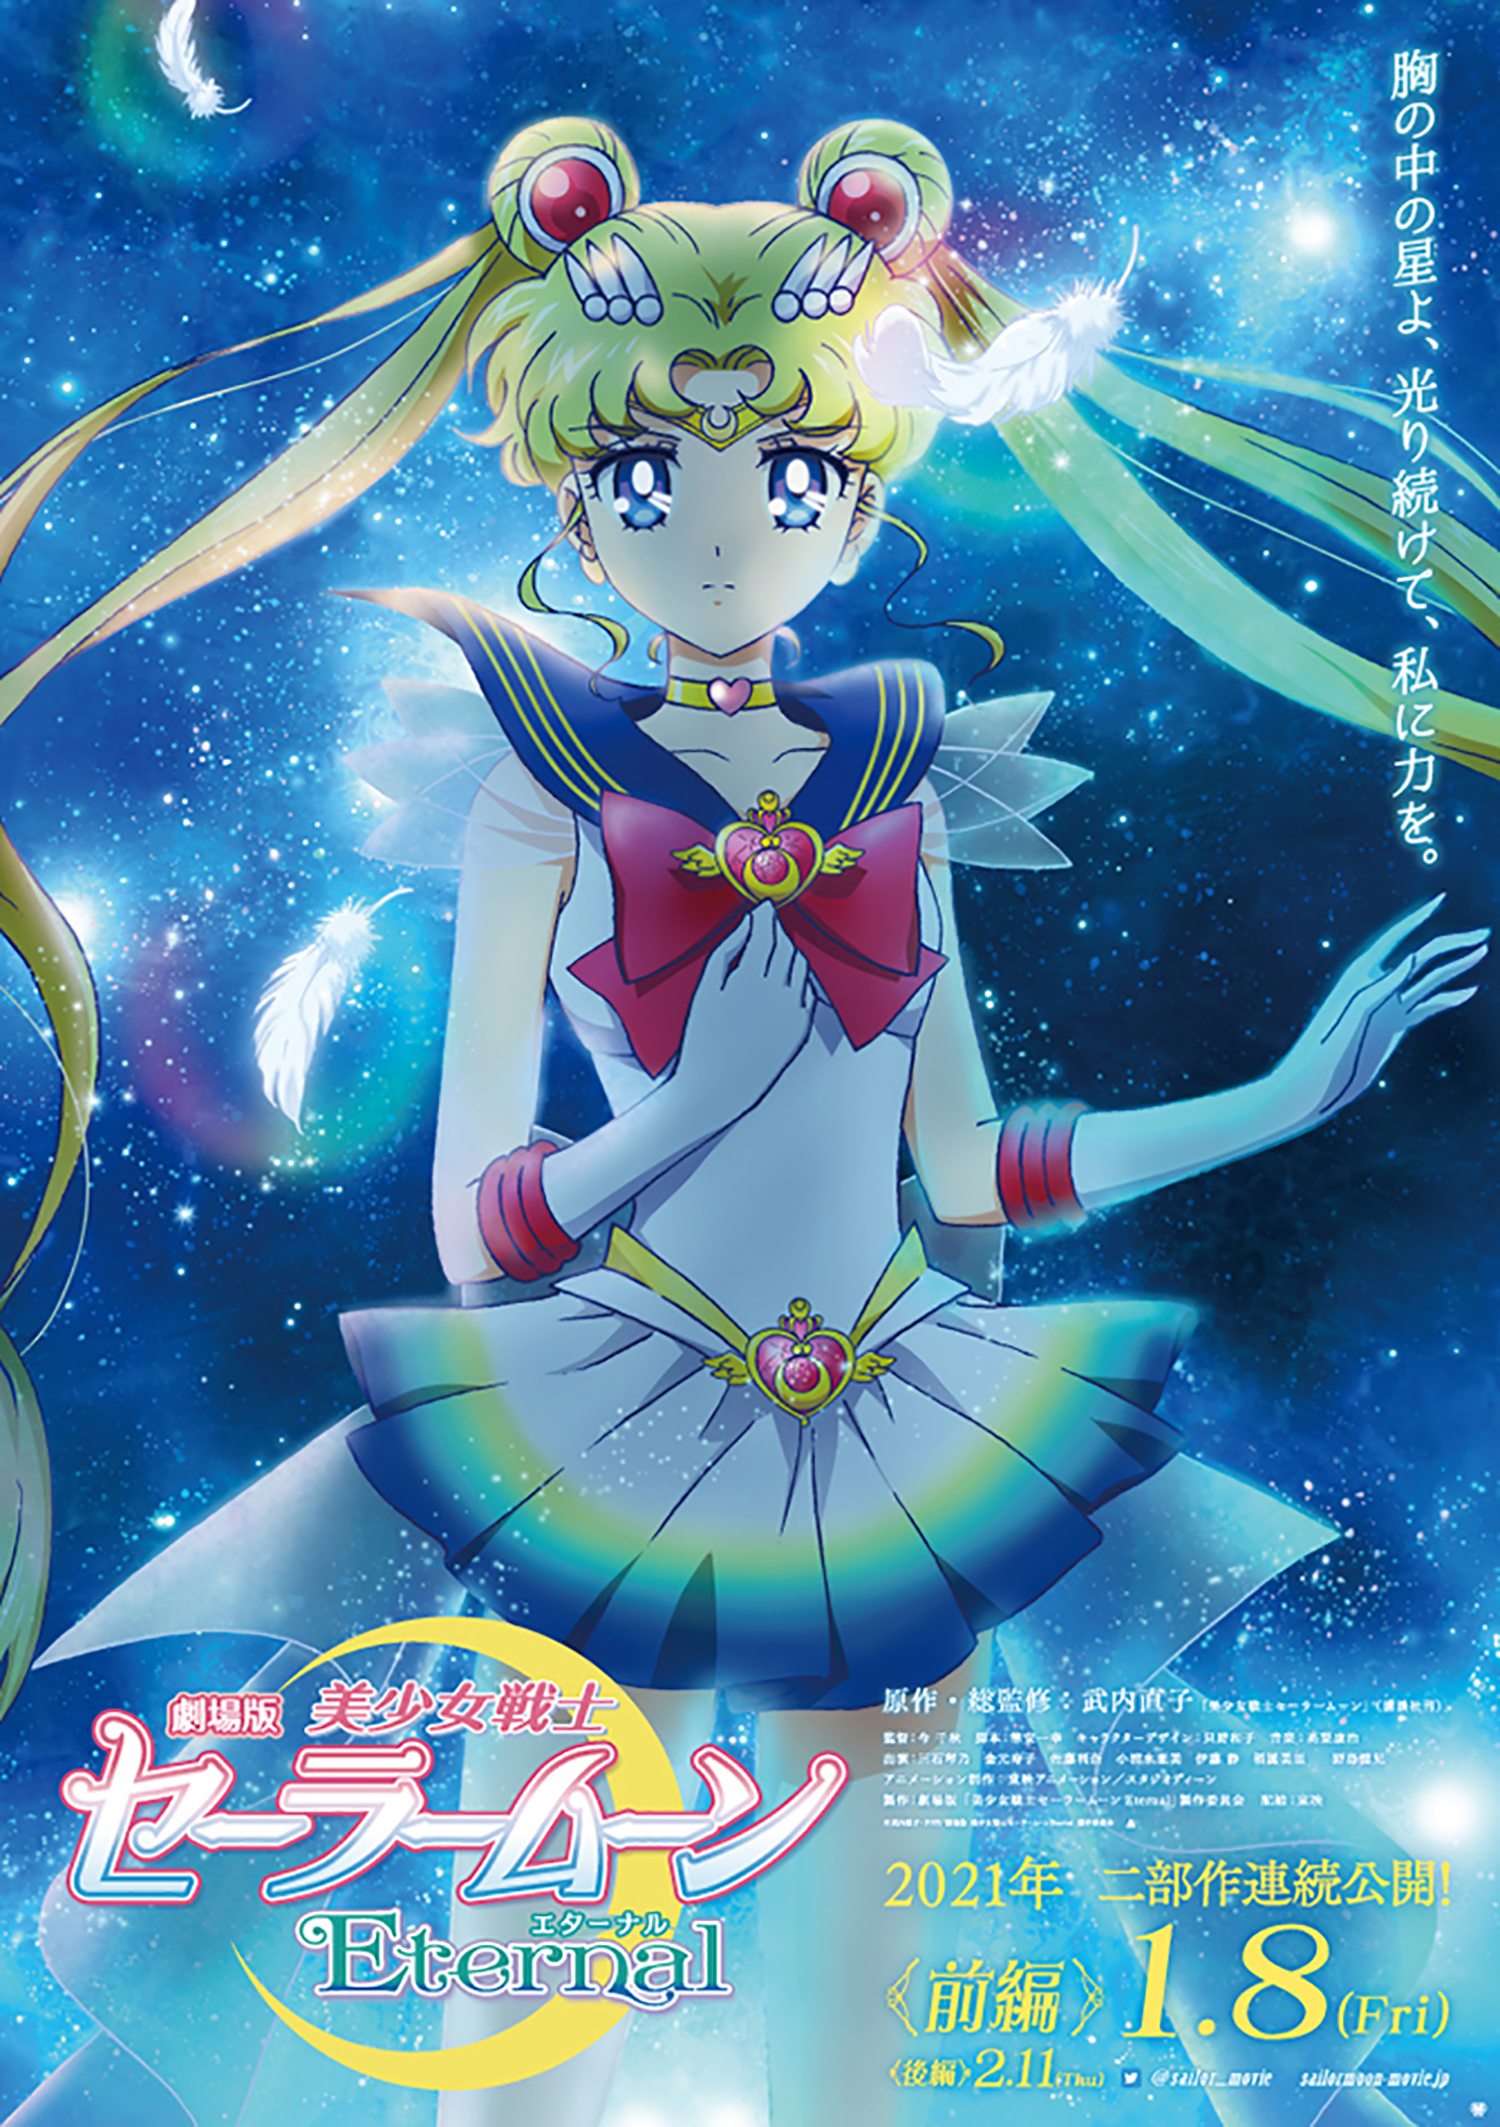 ดูหนังออนไลน์ฟรี Sailor Moon Eternal (2021) เซเลอร์ มูน อีเทอร์นัล